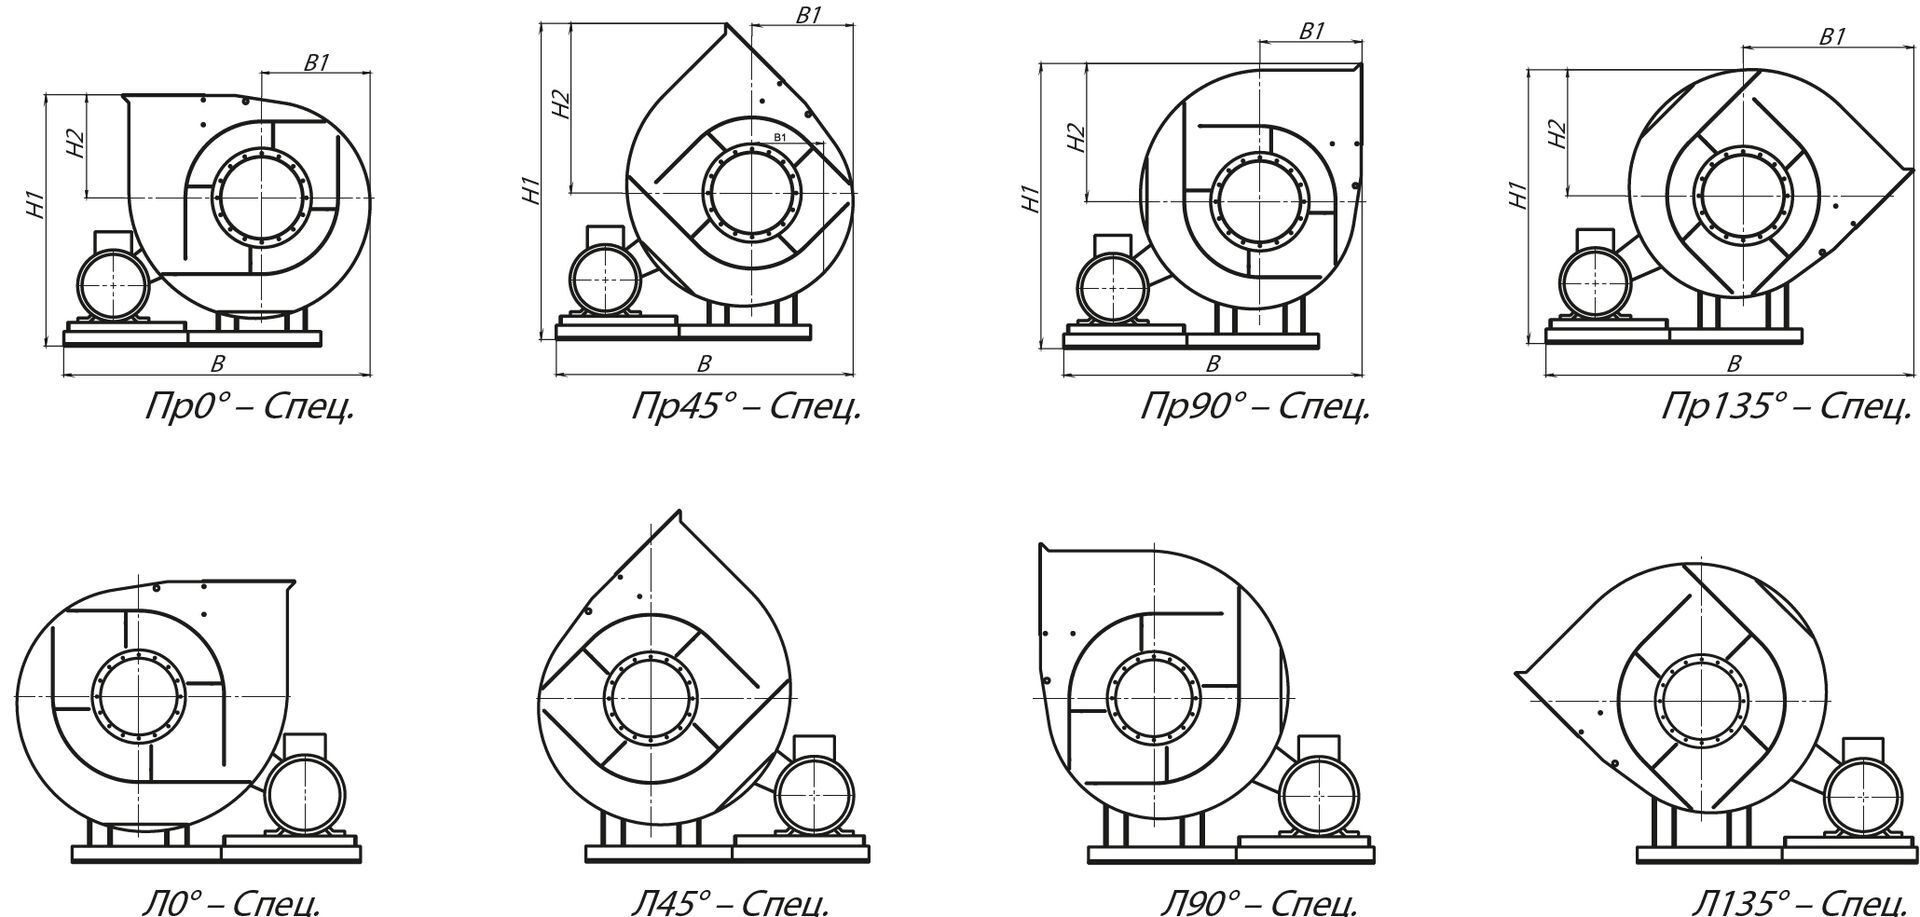 Специальные варианты углов поворота корпуса вентиляторов ВРП 122-45-12,5 (№12,5) схема 5 (исполнение 5)